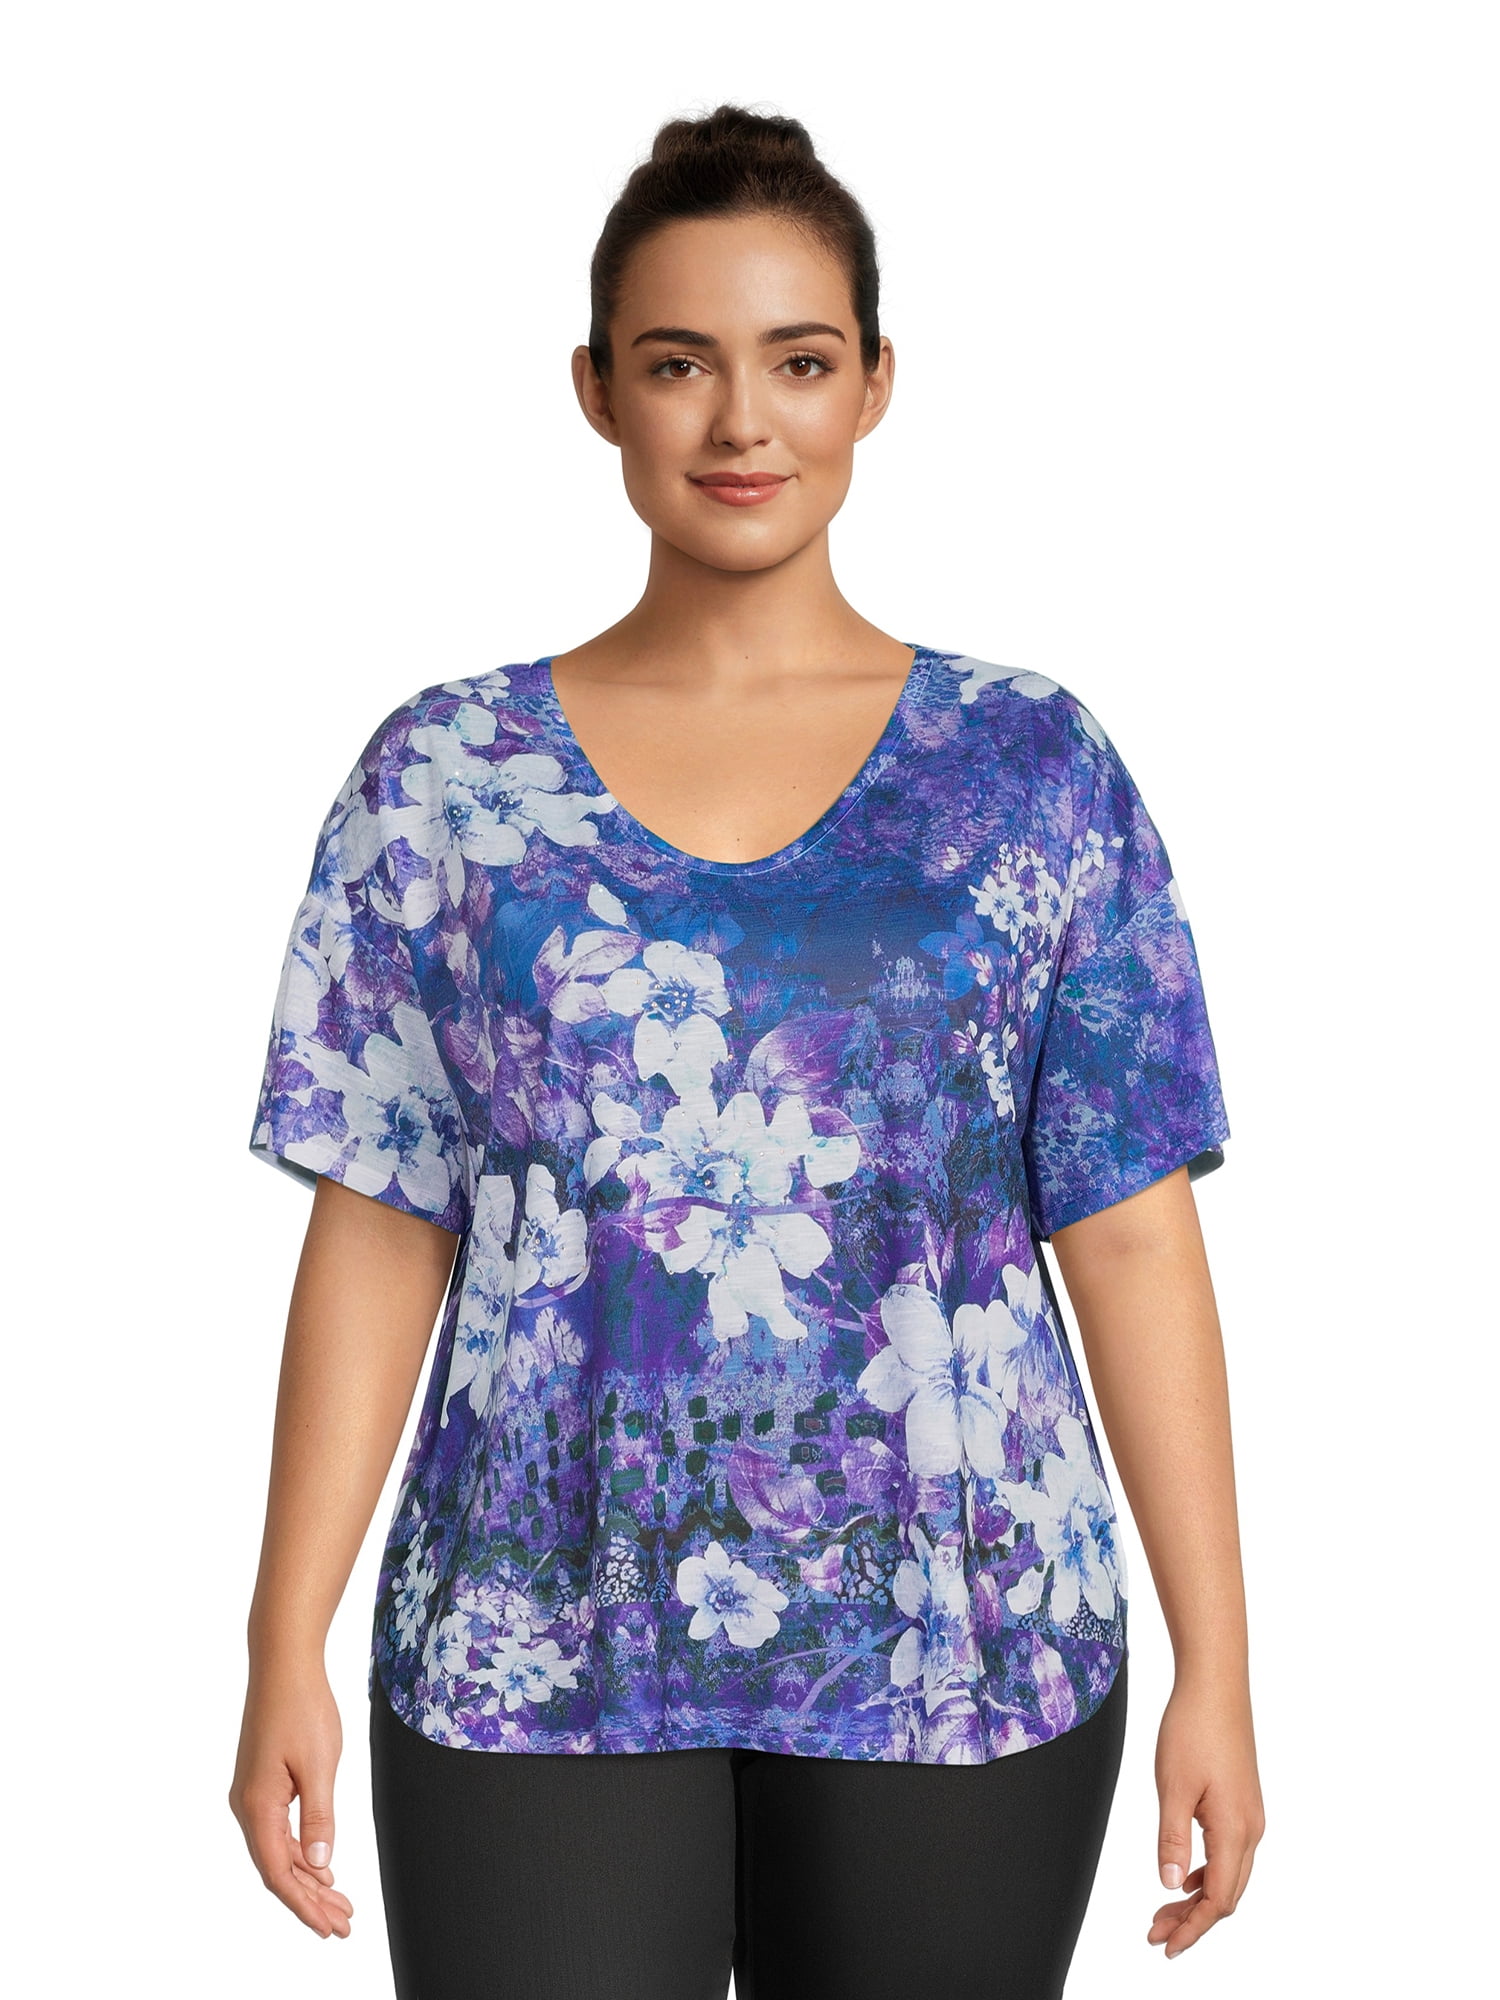 Concepts Women's Plus Size Short Sleeve Sublimation Top - Walmart.com